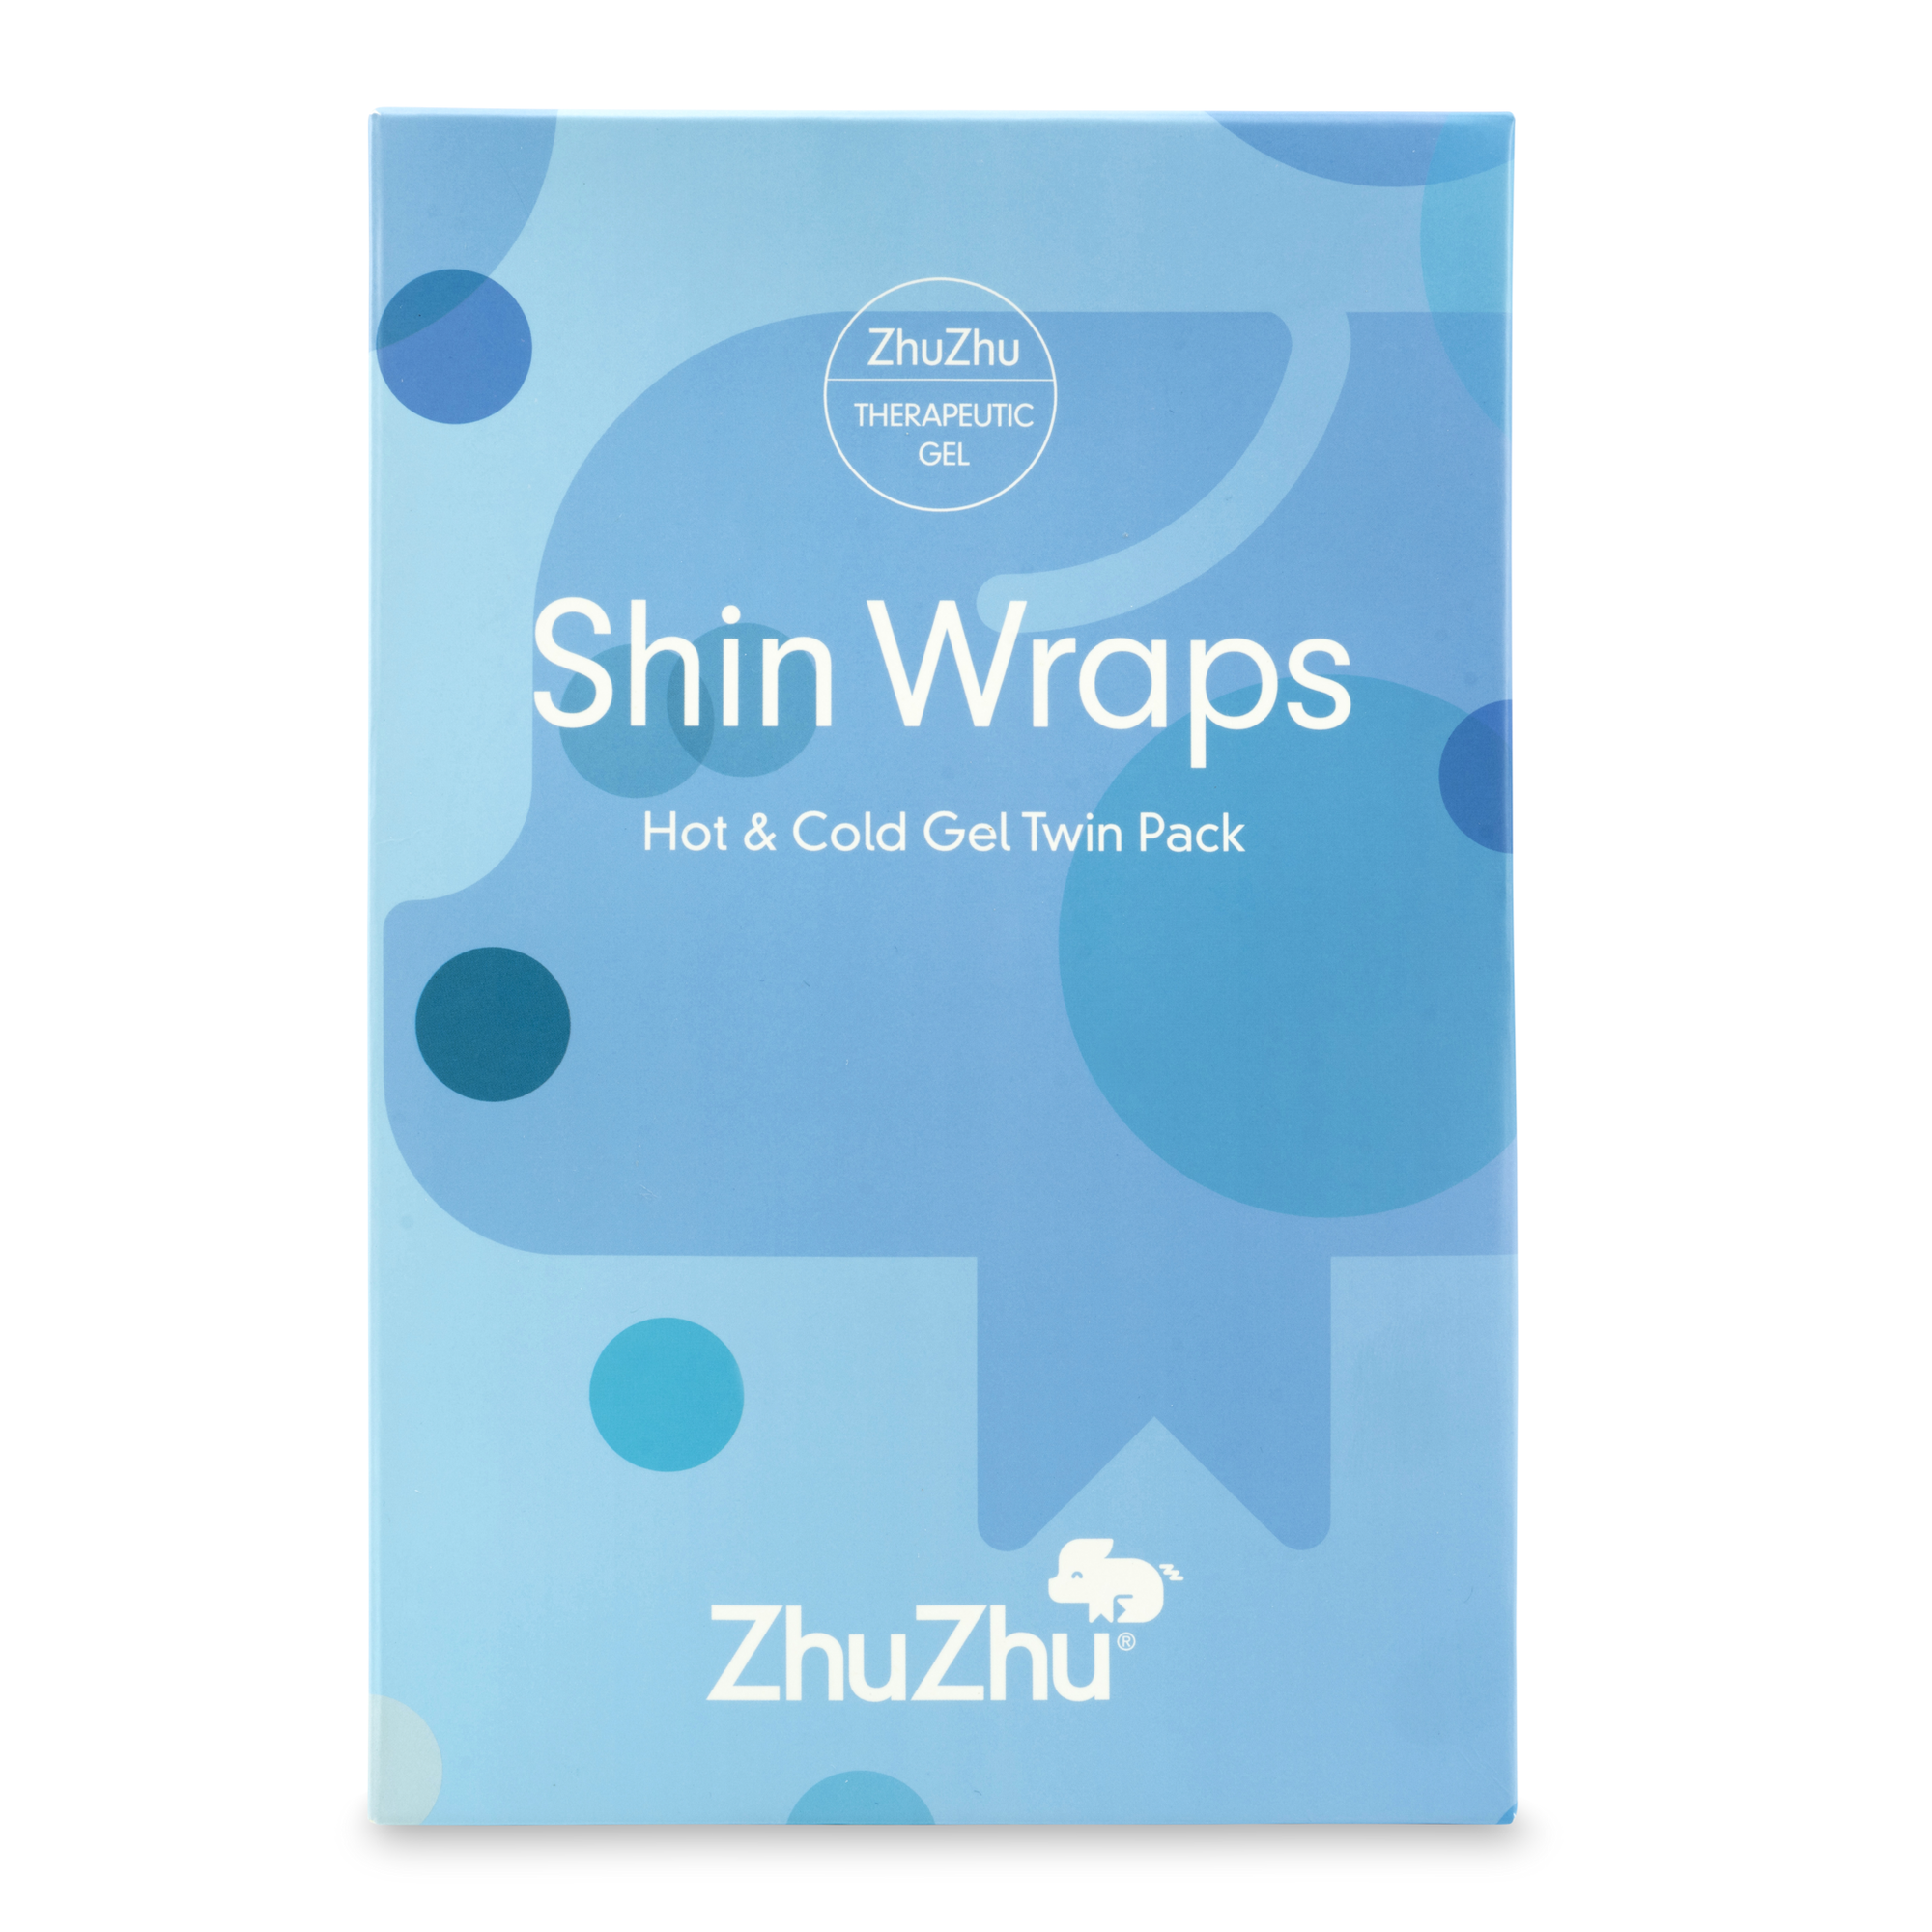 Zhu Zhu Shin Wraps Hot & Cold Gel Twin Pack